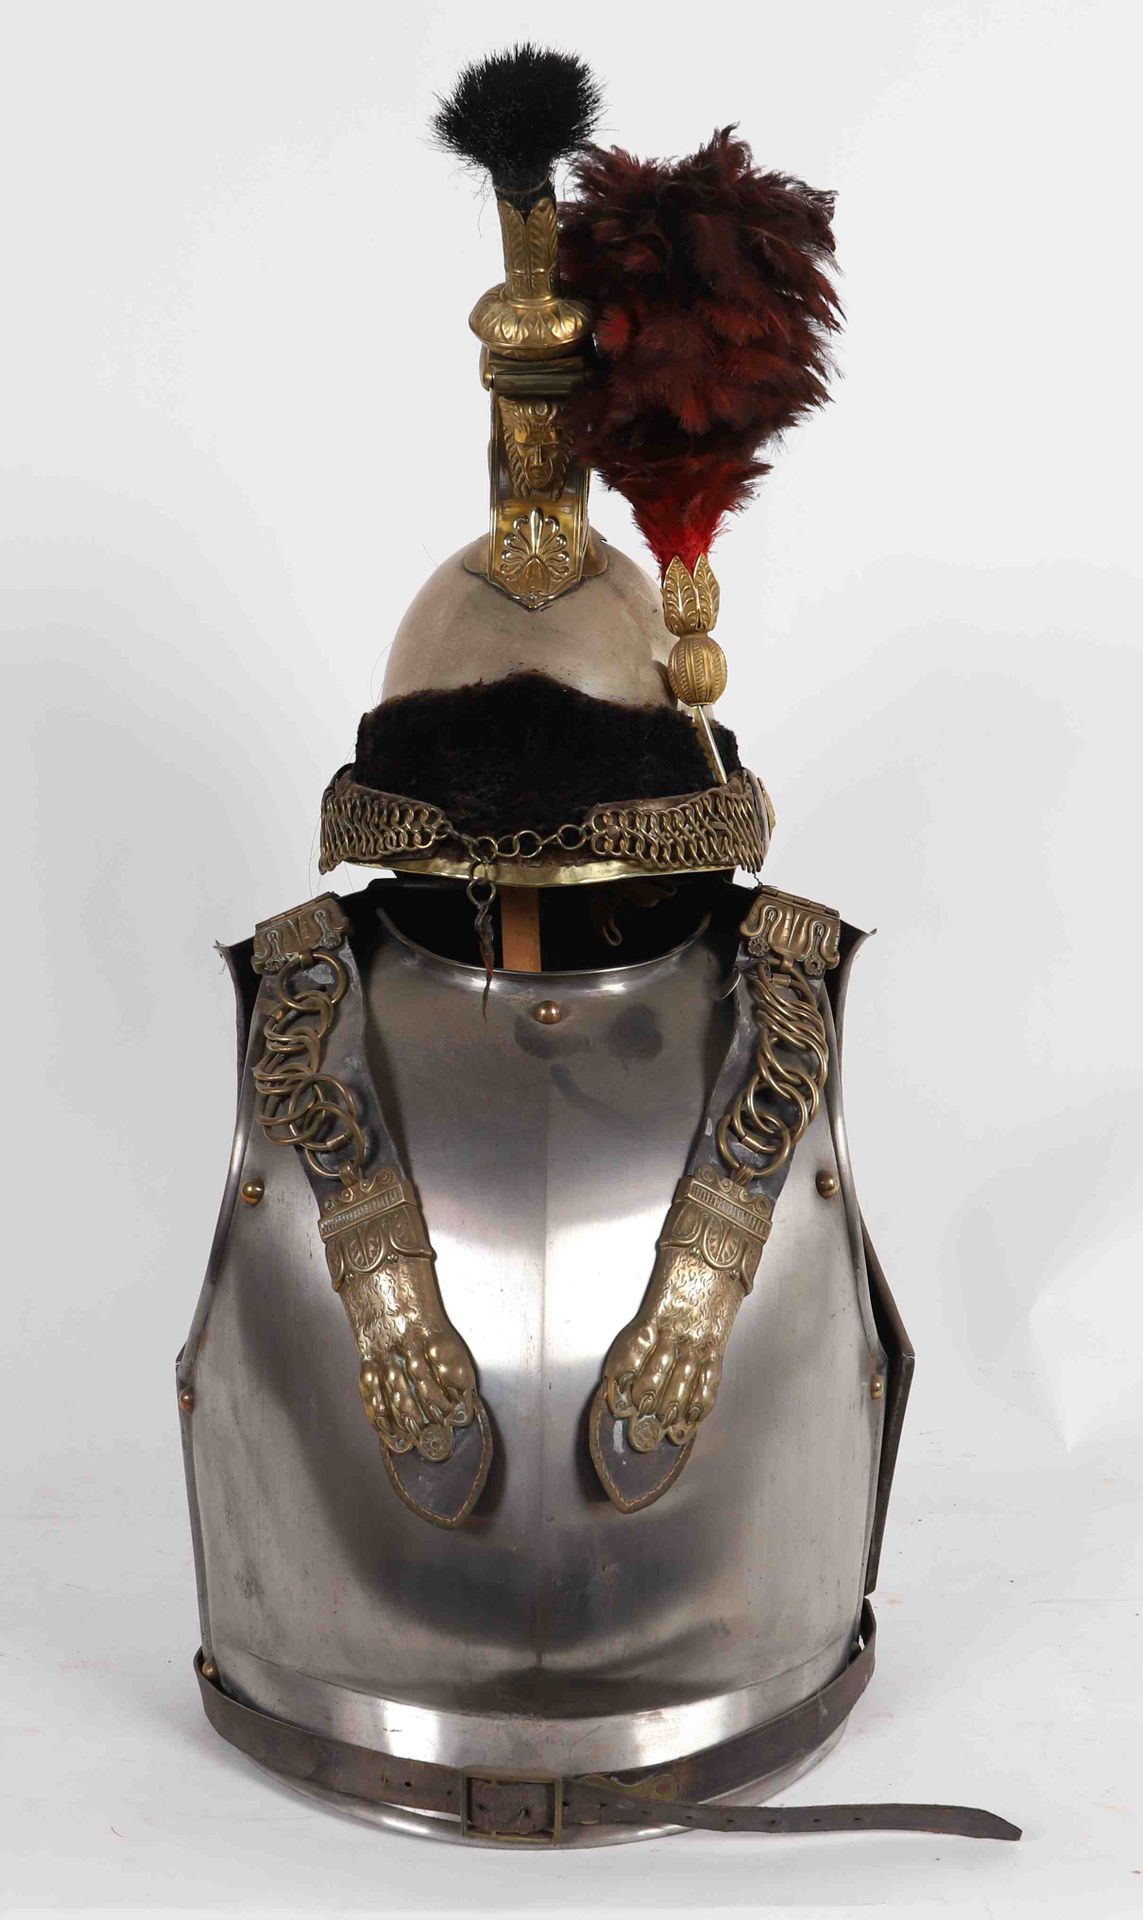 Null 
罕见的胸章
带头盔的军官一号模型


比利时 1830年

恢复使用和维护。

售价6 875.00欧元。
2022年10月9日星期日